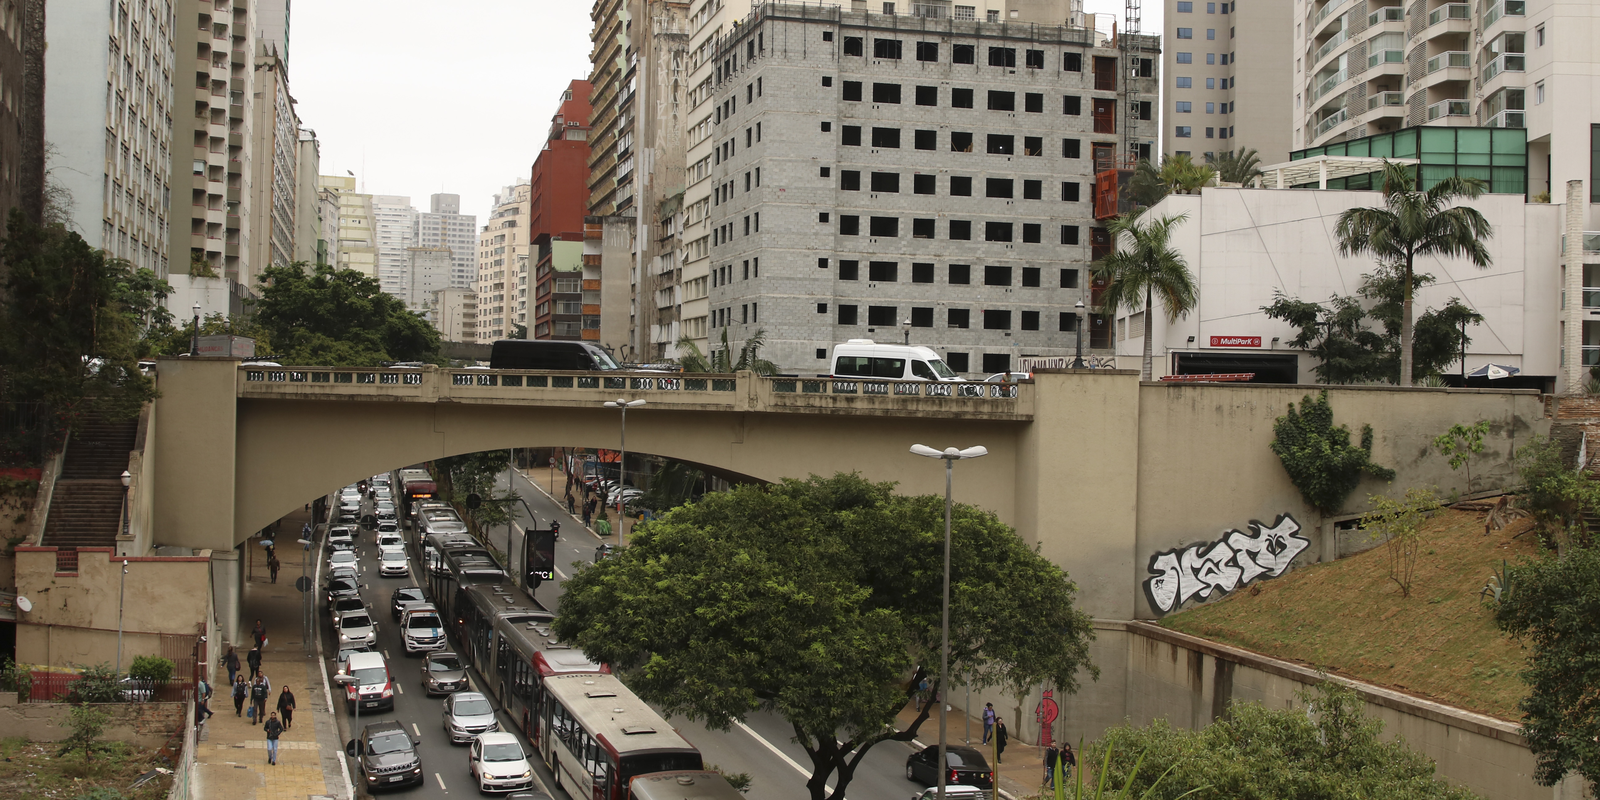 De cada dez municípios, três não têm recursos próprios para se manter – finanças brasil